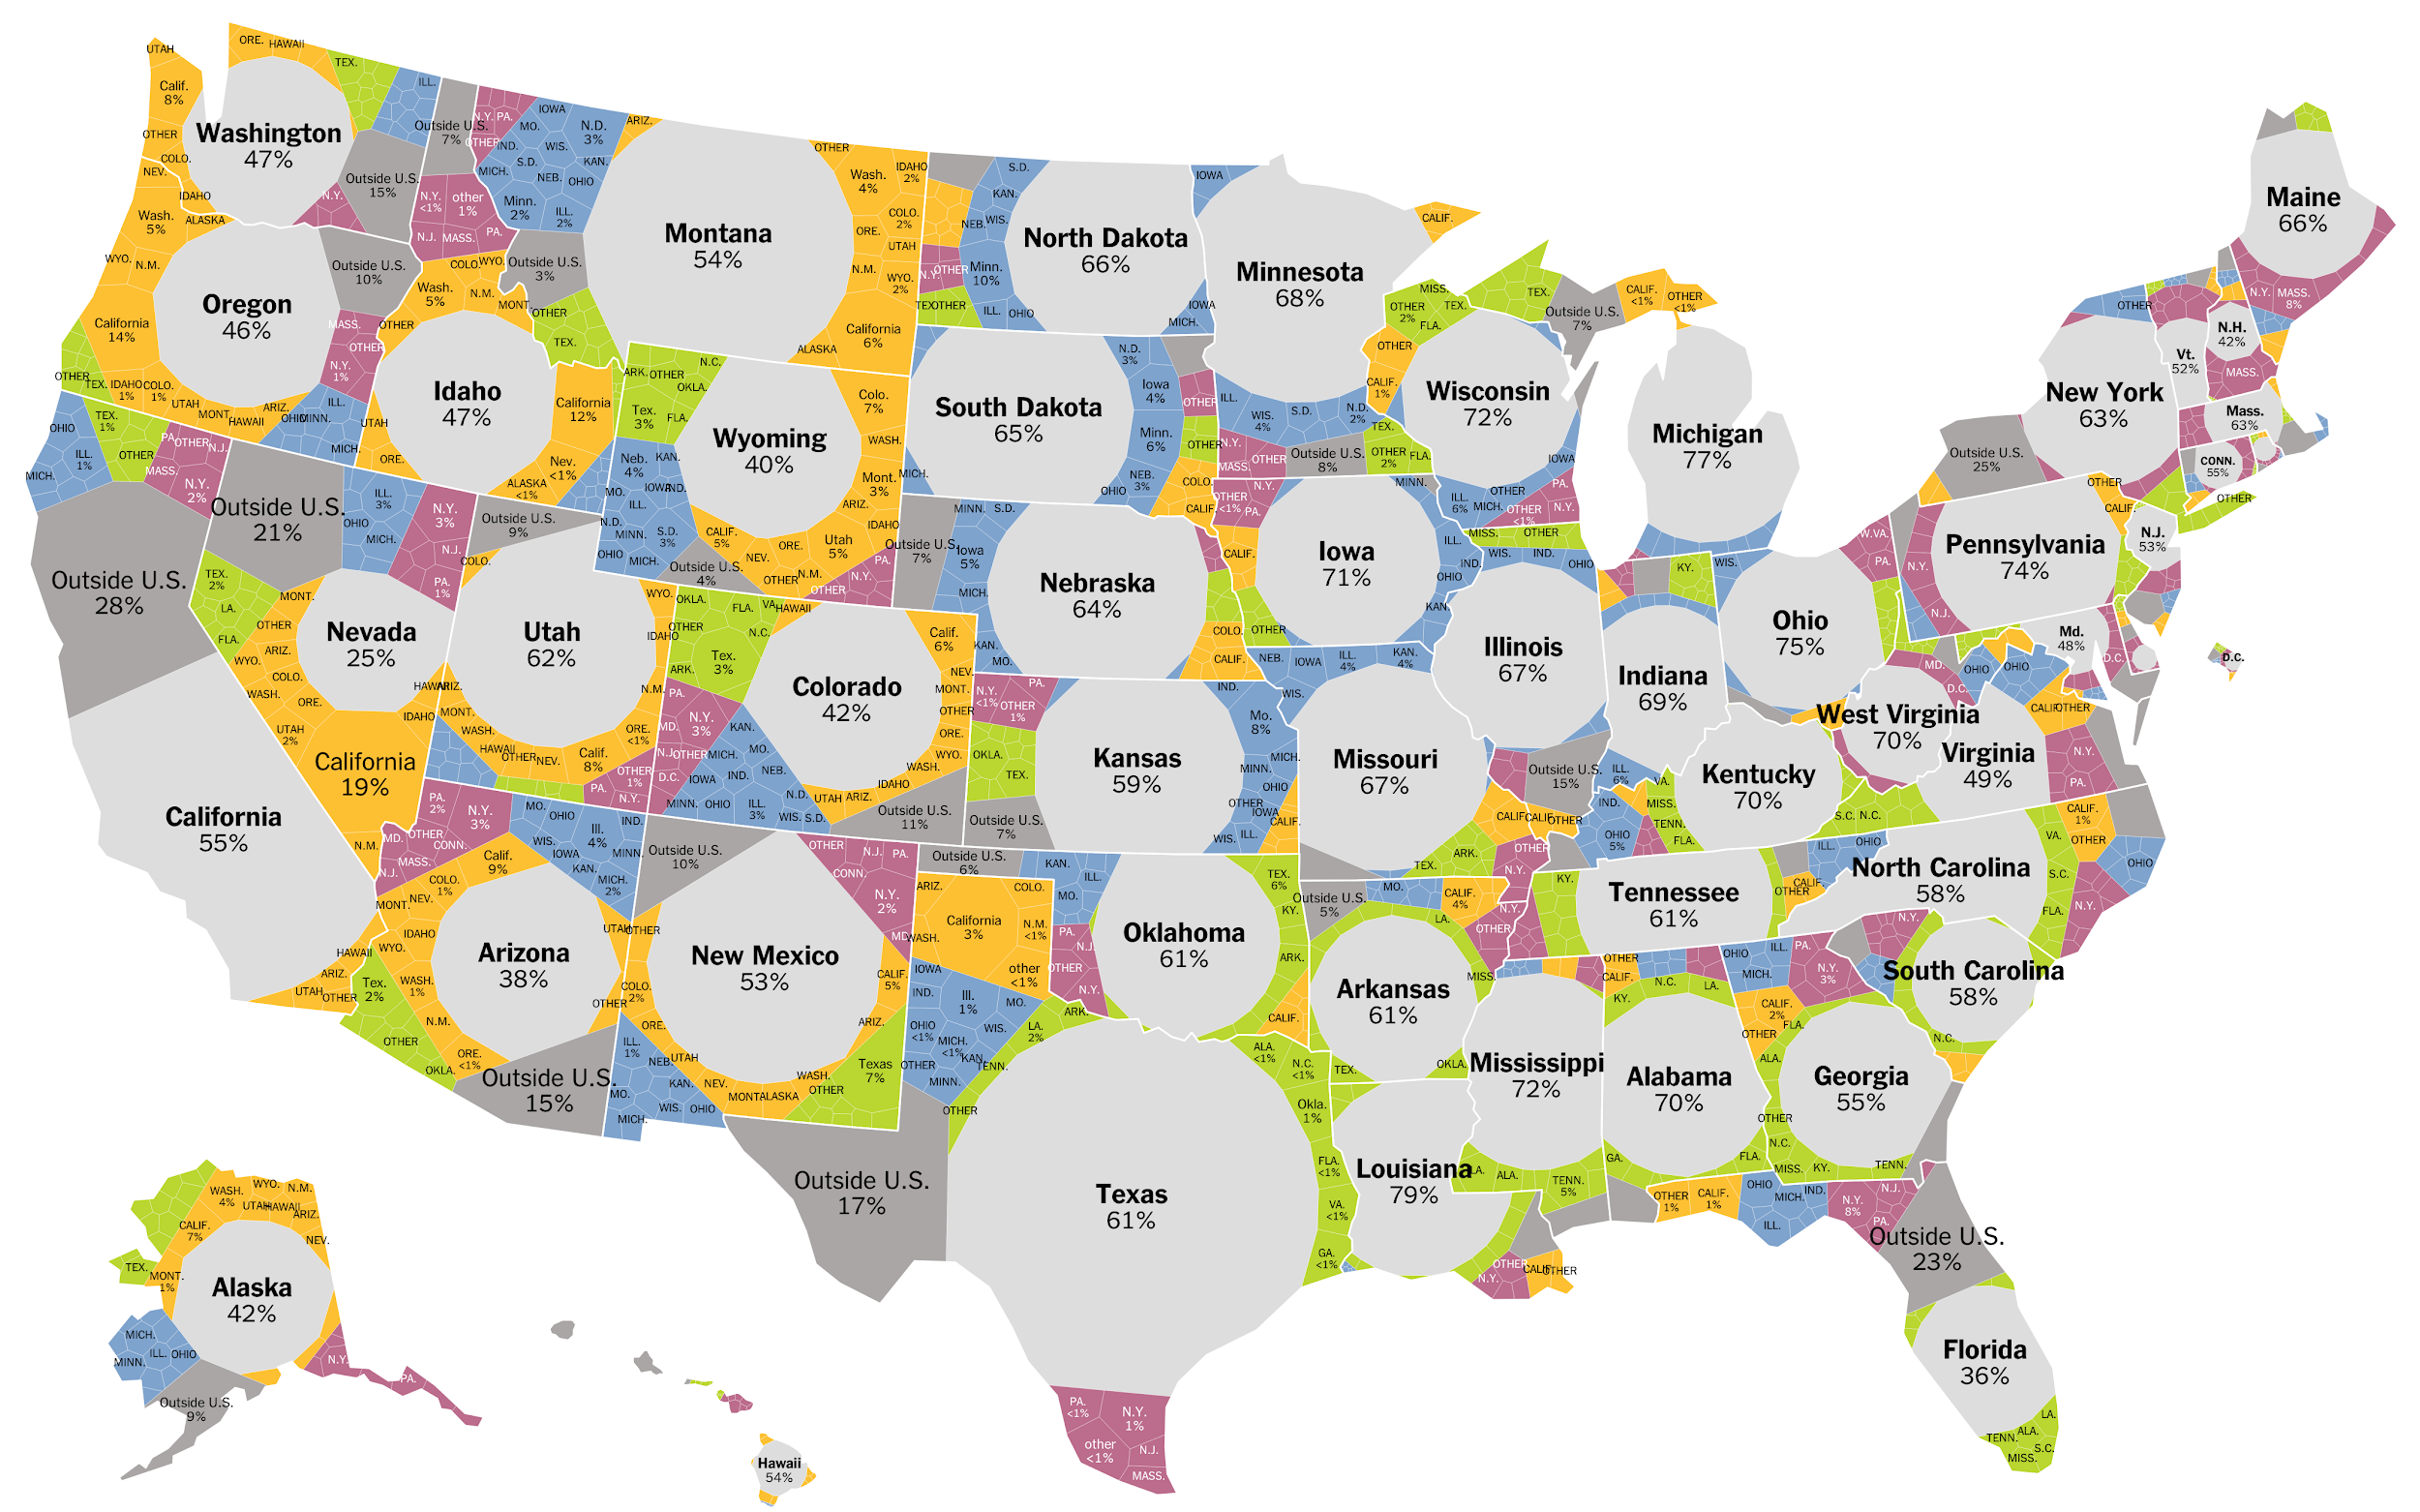 &ldquo;Mapping Migration in the US,&rdquo; un ejemplo de visualización mixta de mapas y voronoi_treemap. Fuente: New York Times.